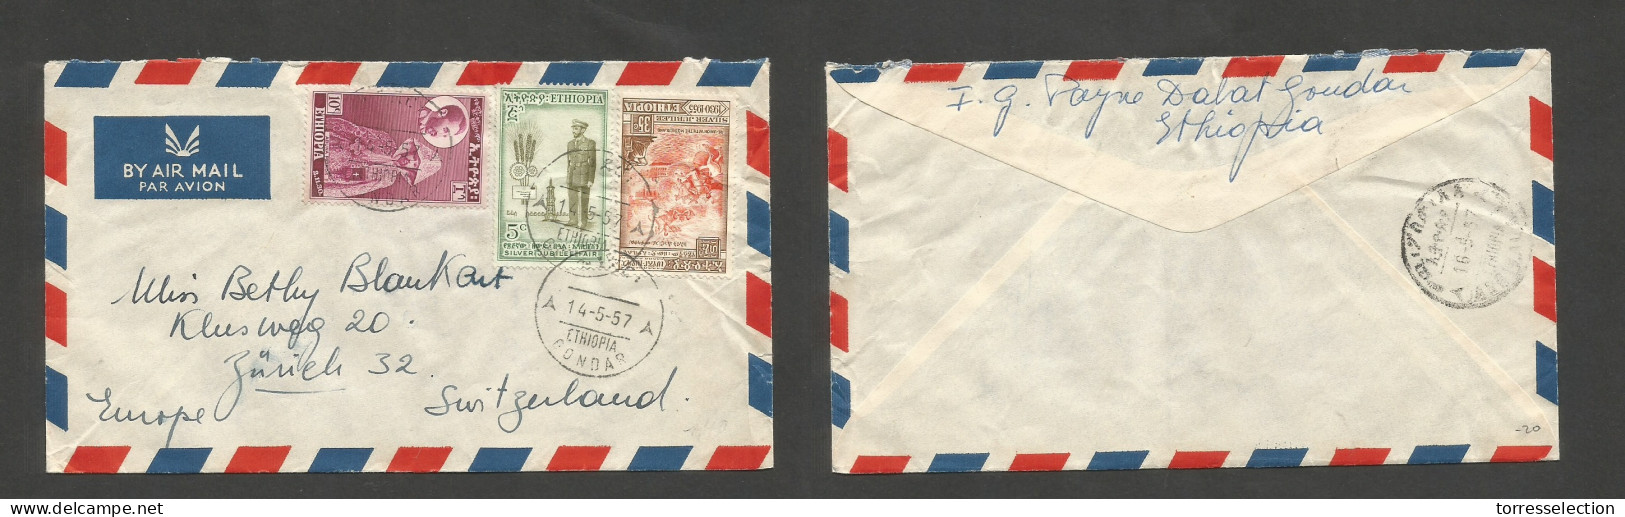 ETHIOPIA. 1957 (14 May) Gondar - Switzerland, Zurich. Air Multifkd Mixed Issues Envelope, Tied Cds. VF. SALE. - Ethiopie